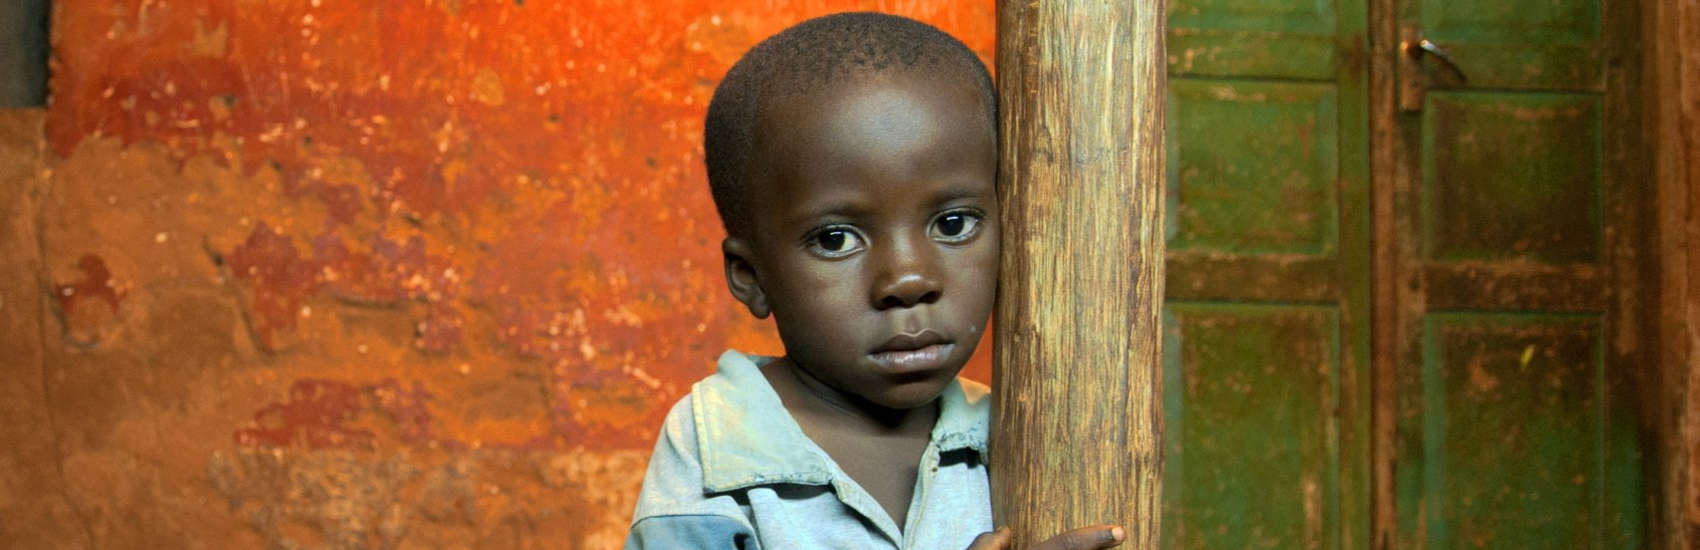 Help Children in Tanzania | Save the Children